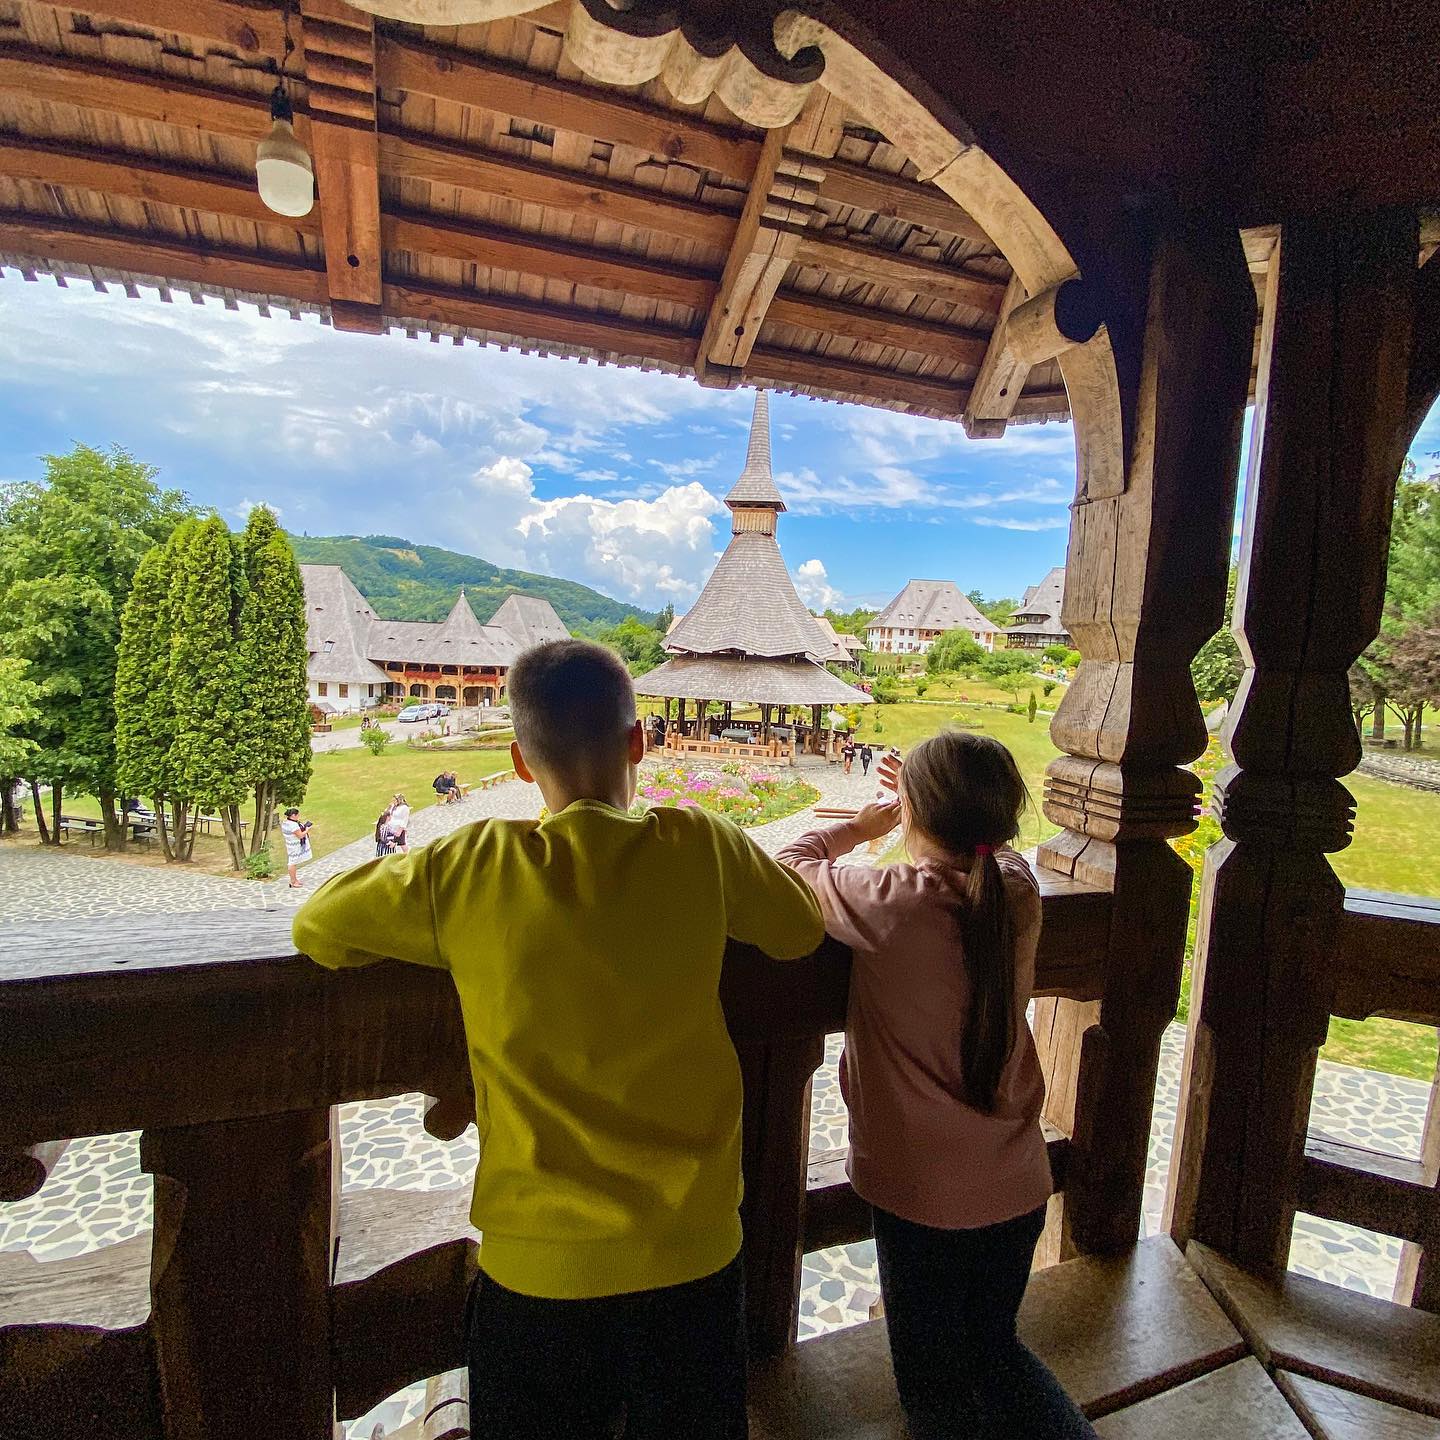 Wróciliśmy do Rumunii 🤩🤩, Bułgaria jakoś nas nie przekonała. Jutro ruszamy na Transalpinę, ale ta fotka przed Wami to kompleks klasztorów Barsana, z samego początku naszej podróży ❤️❤️❤️ #visitromania #wakacje2022 #podrozezdzieckiem #trip #rumuńskitrip #romaniamagica #romaniatravel #romanianow #loveit #naszedzieci #maramures #samochodemnawakacje #monastery #latowpełni #podróże